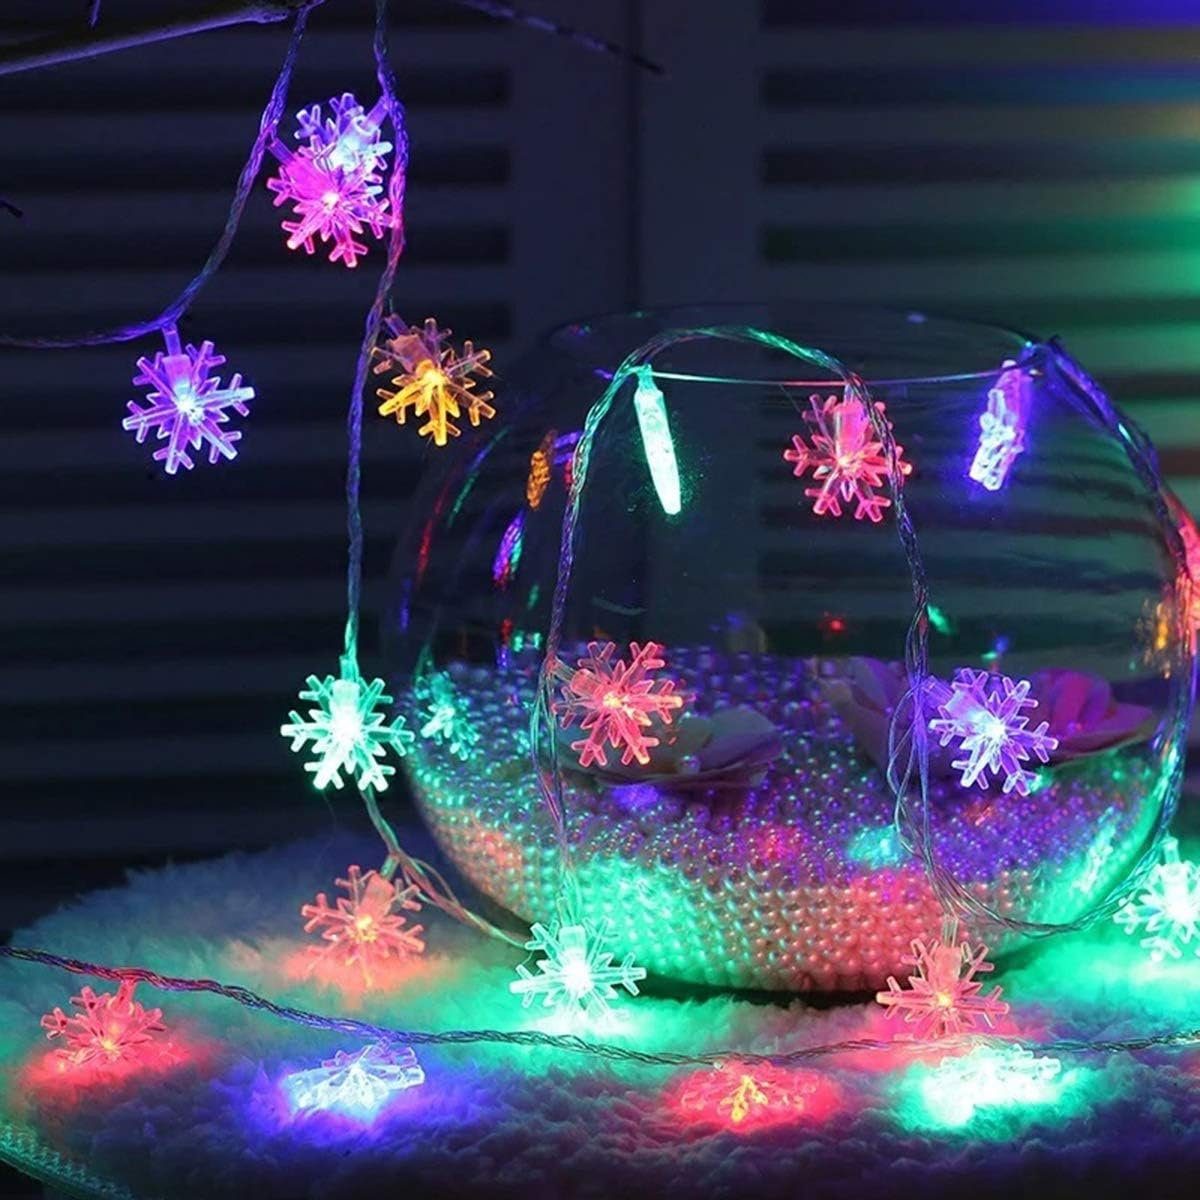 LED-Lichterkette Jormftte Weihnachts-Lichterkette,12m,LED-Lichterkette,für Weihnachten,Party